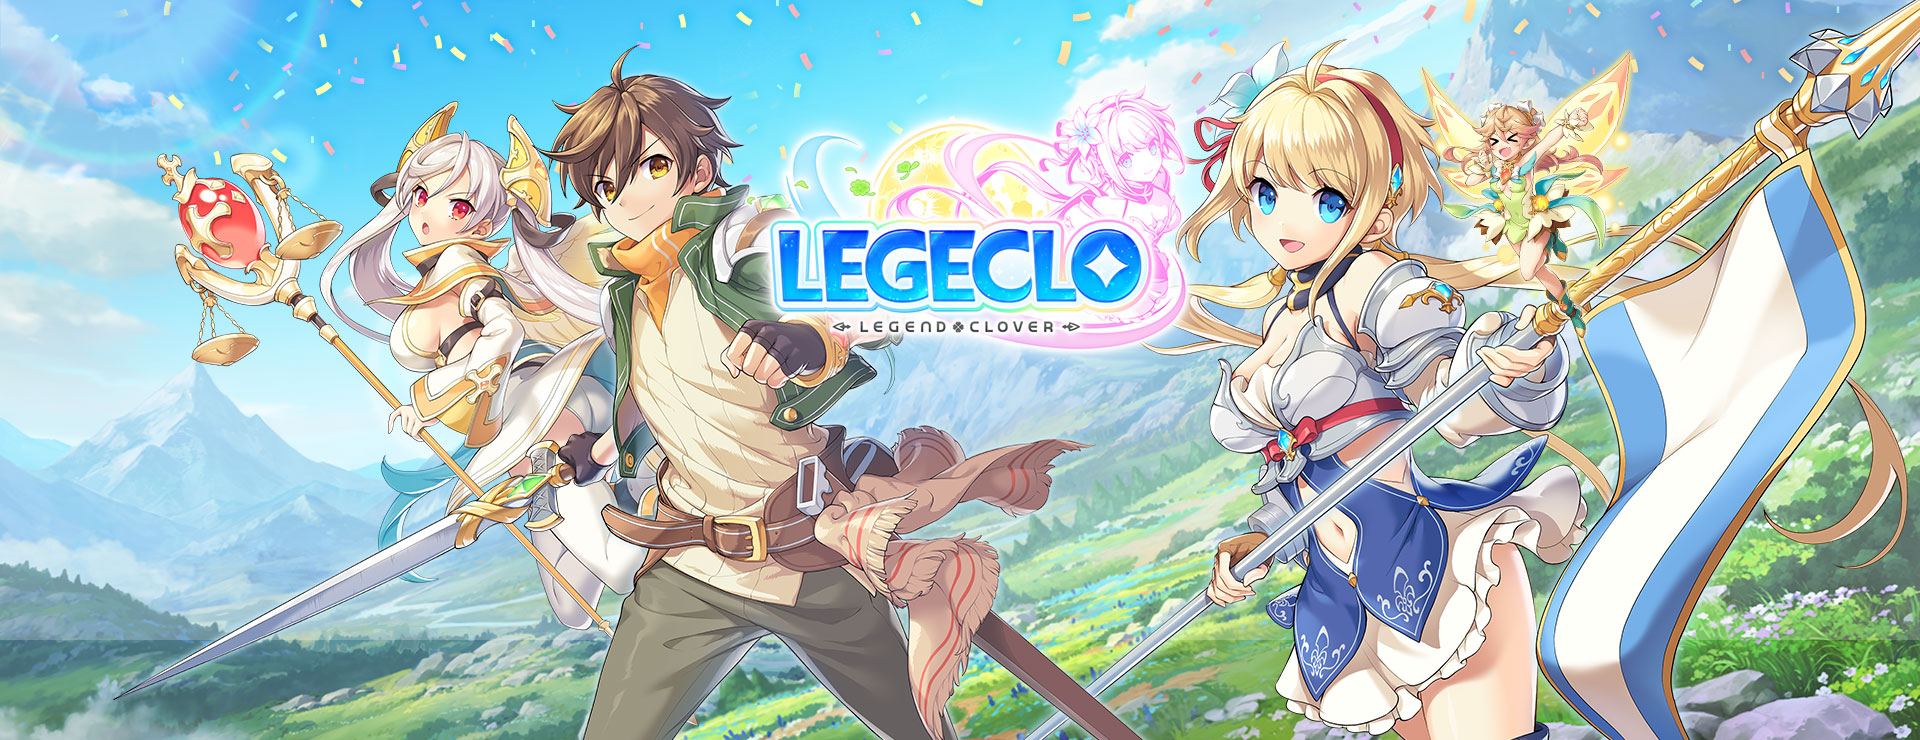 Legeclo: Legend Clover - Rundenbasiertes RPG Spiel